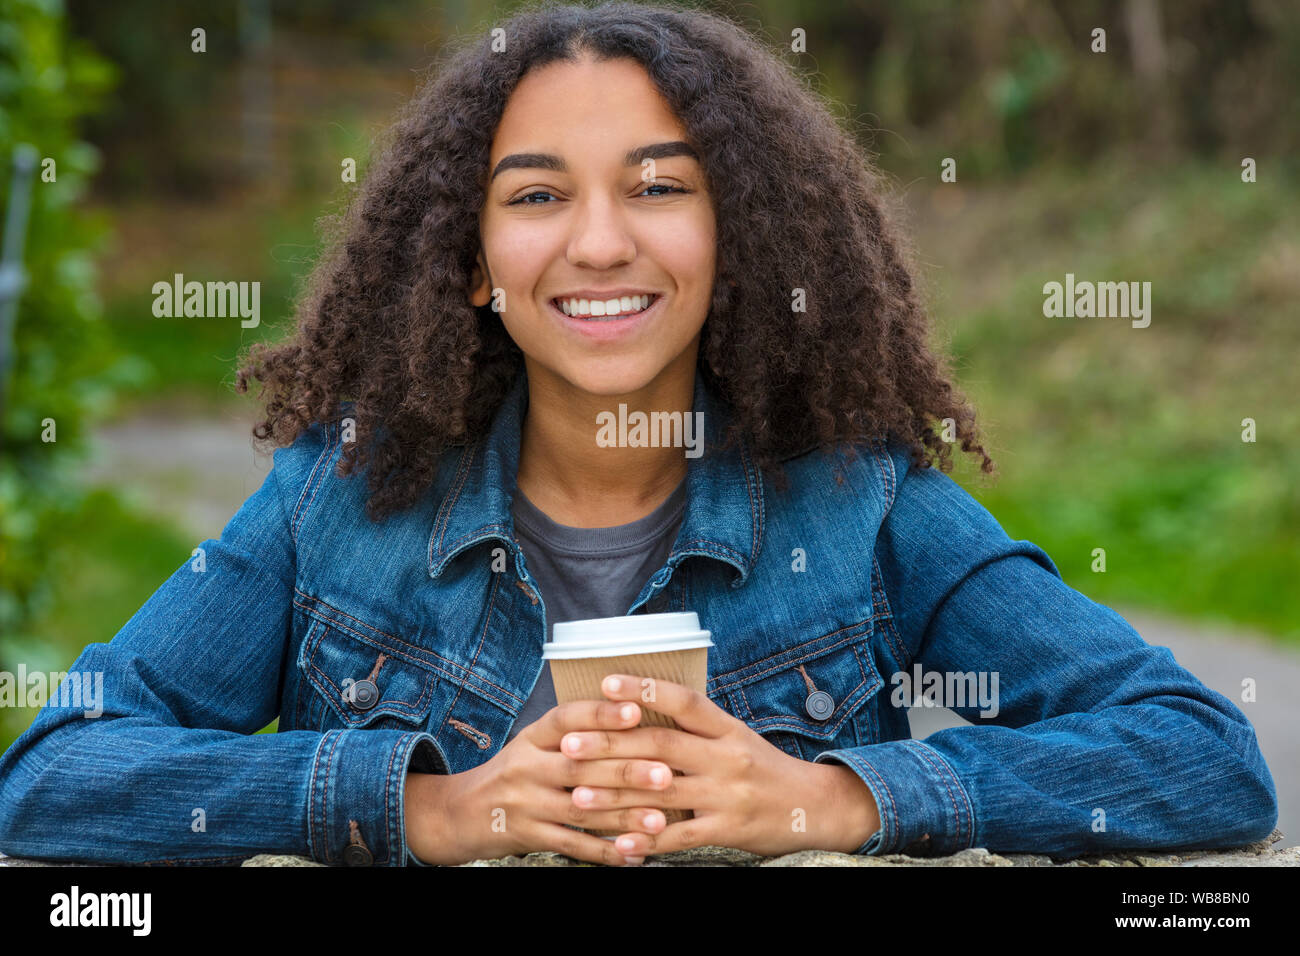 Schöne happy biracial Mixed Race African American Girl Teenager weibliche junge Frau lächelnd mit perfekte Zähne trinken Kaffee zum Mitnehmen vor Verschleiß Stockfoto